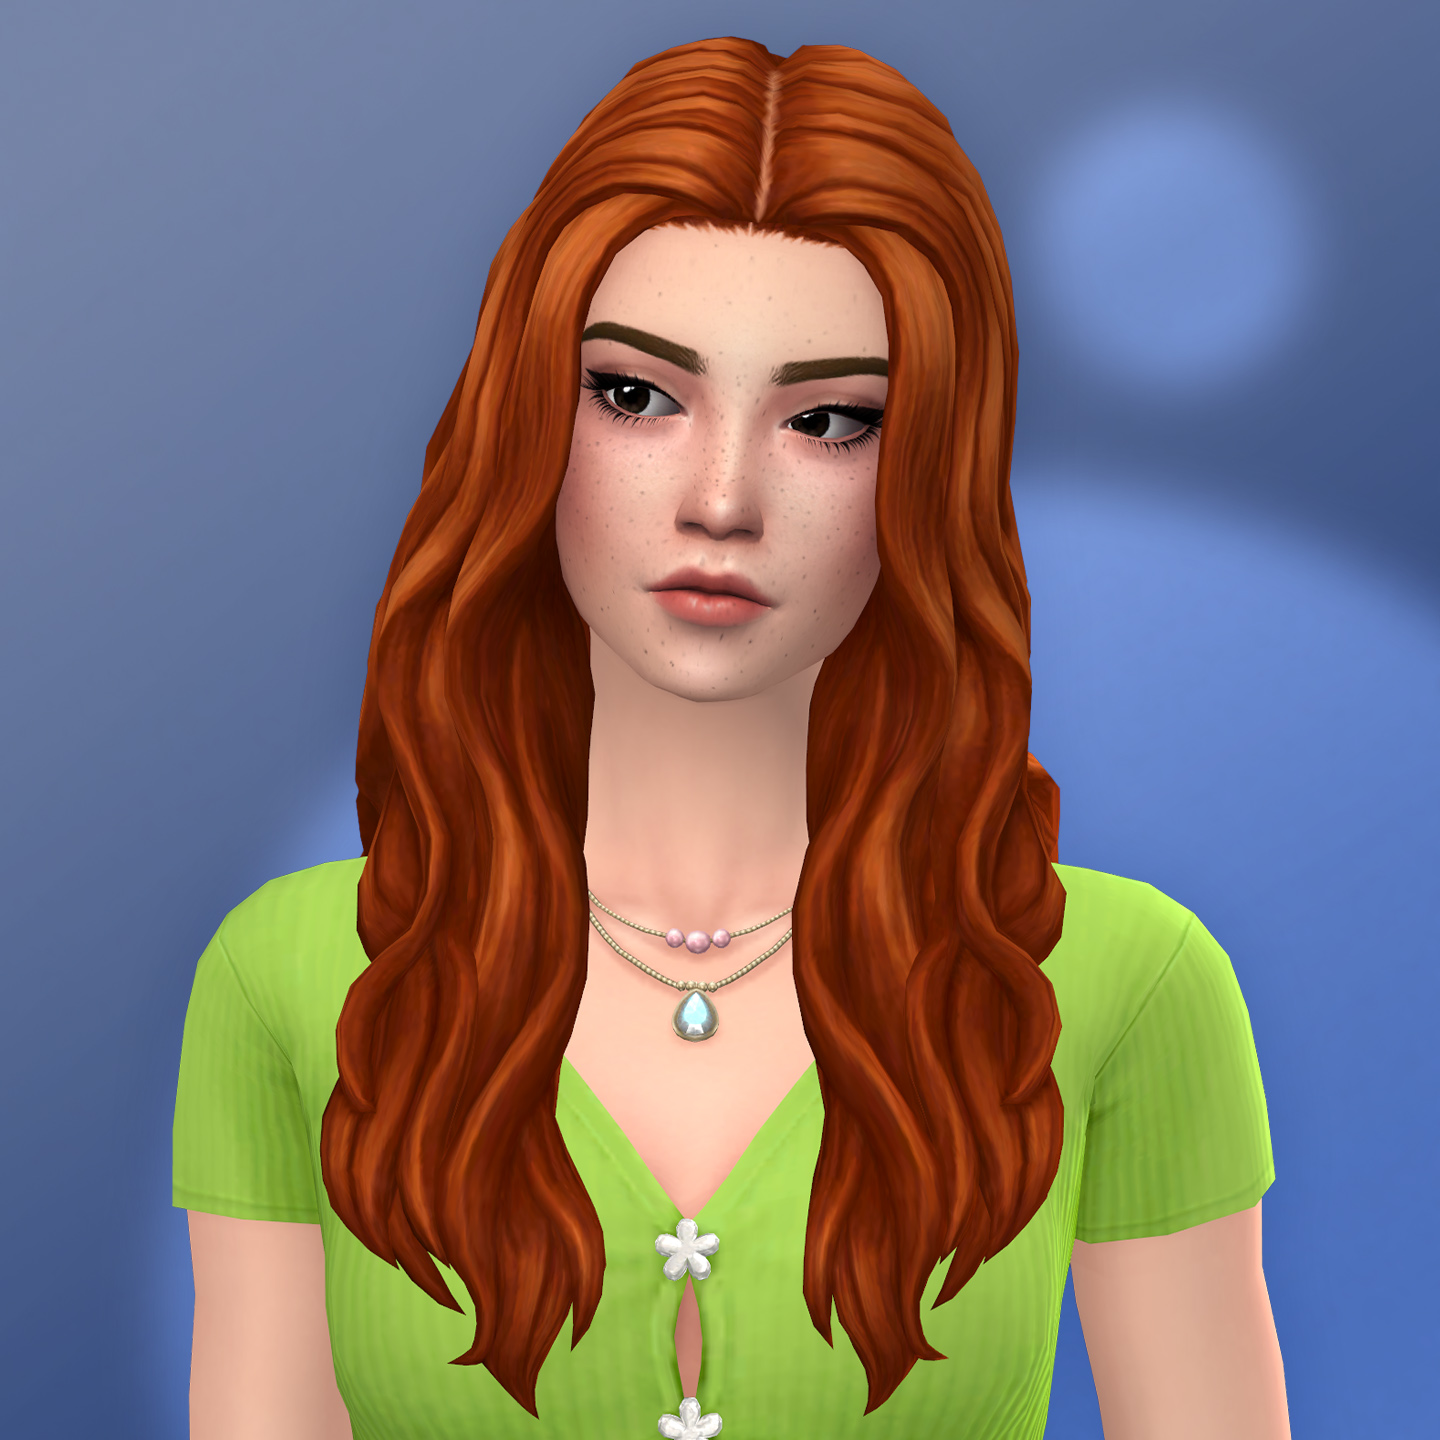 QICC - Isabel Hair - The Sims 4 Create a Sim - CurseForge